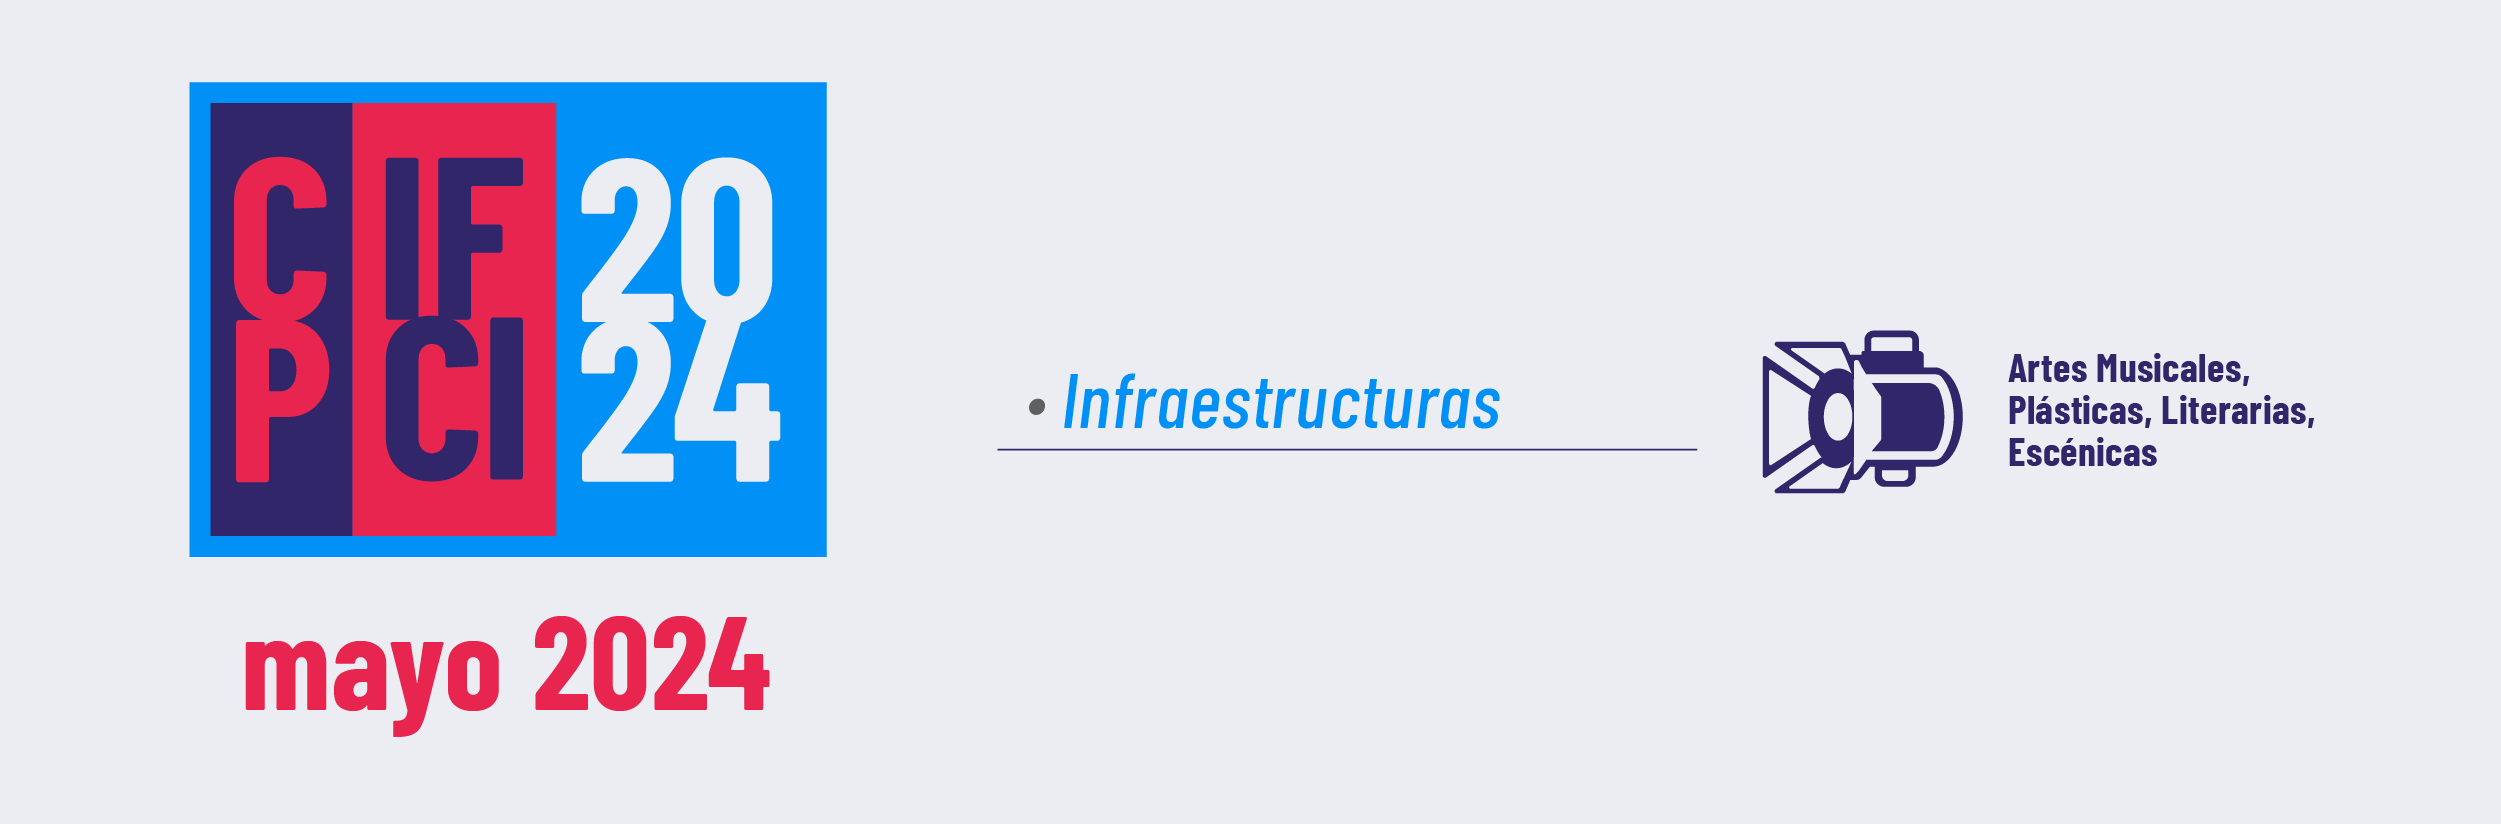 Concurso público: Infraestructuras